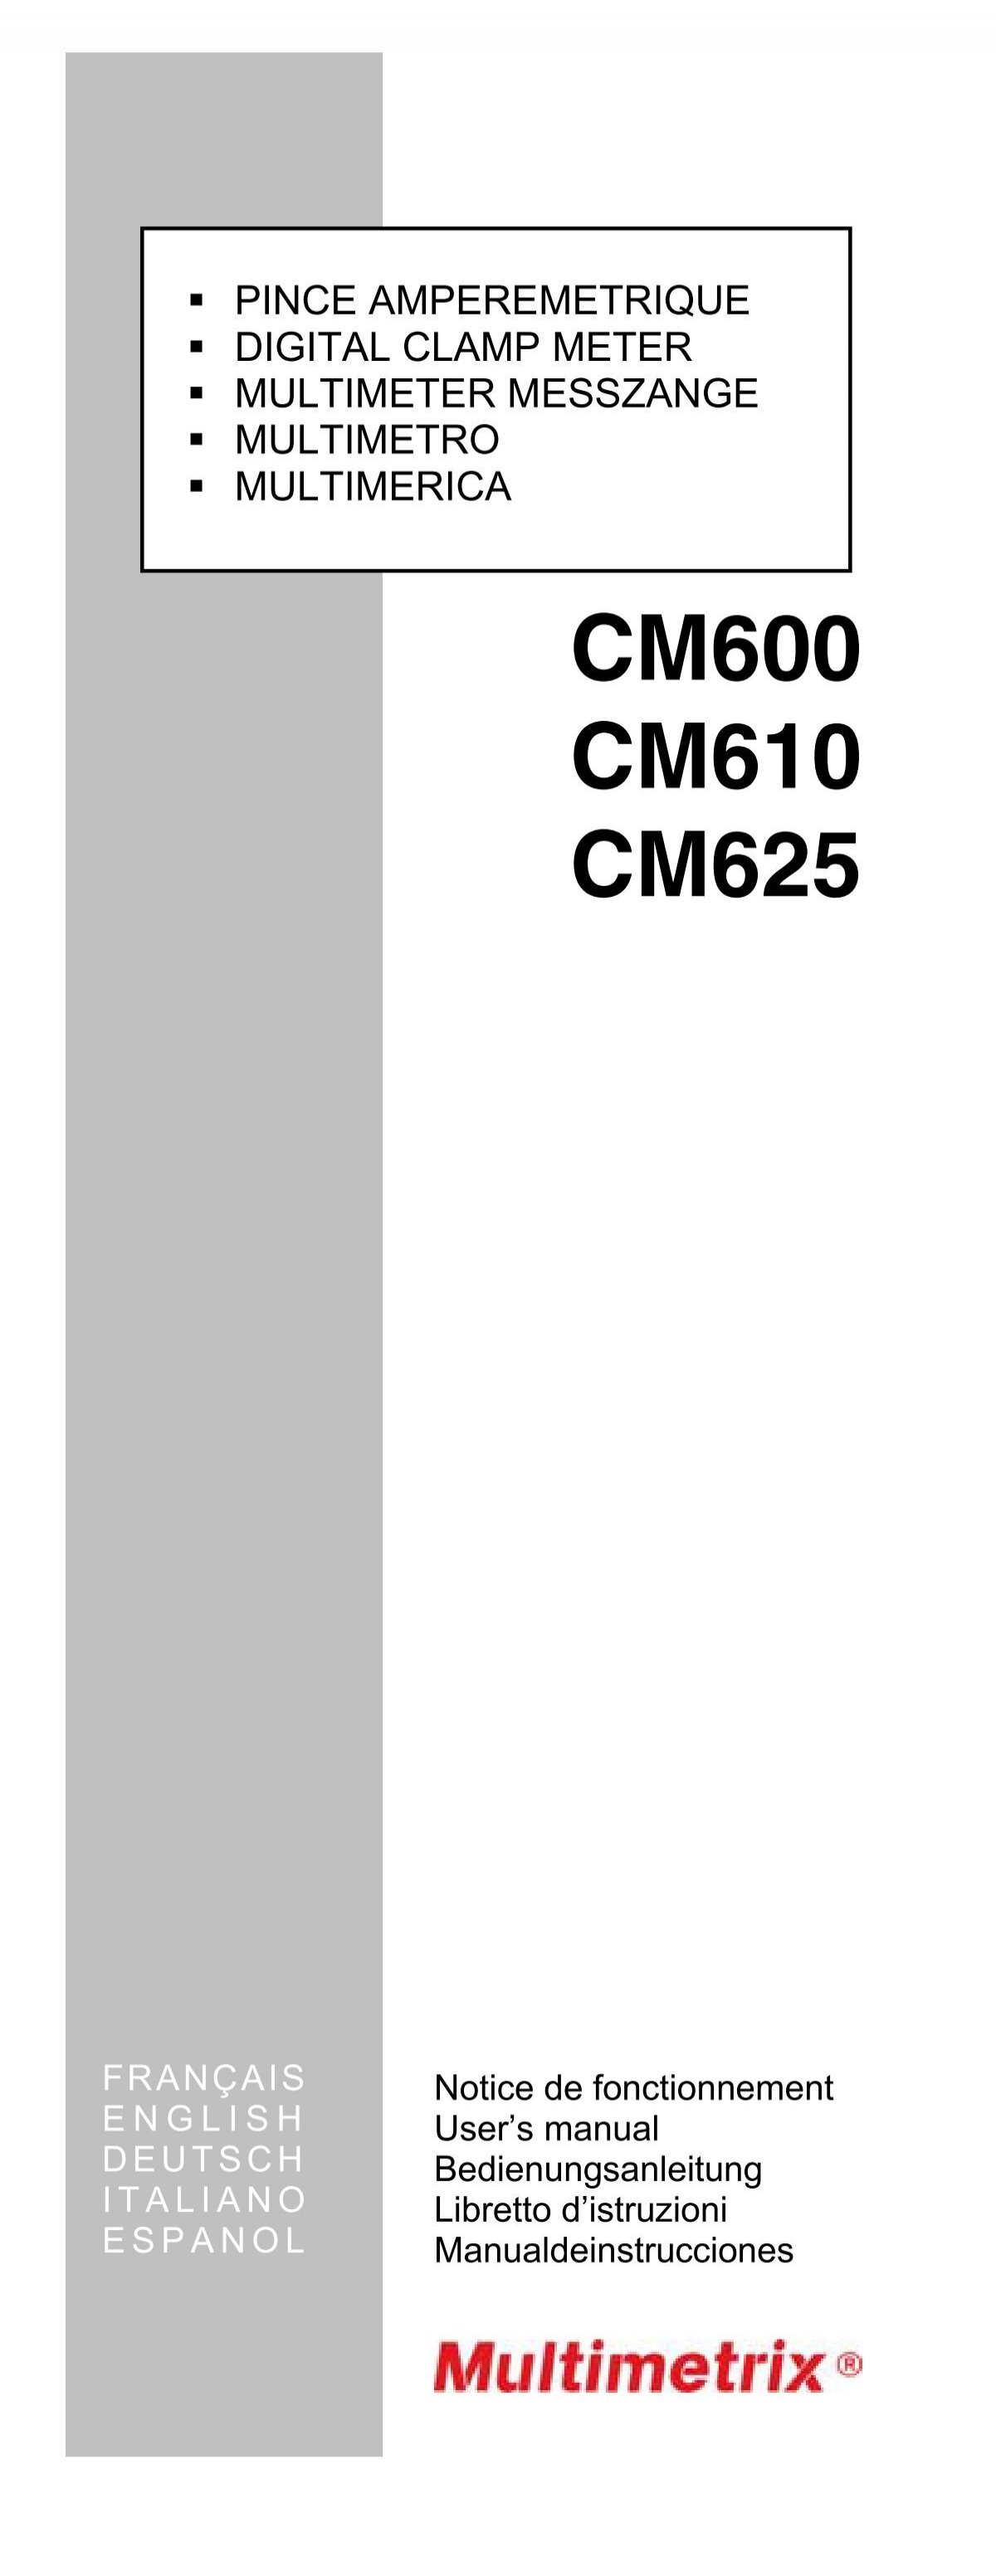 Pince multimètre CHAUVIN ARNOUX CM 610